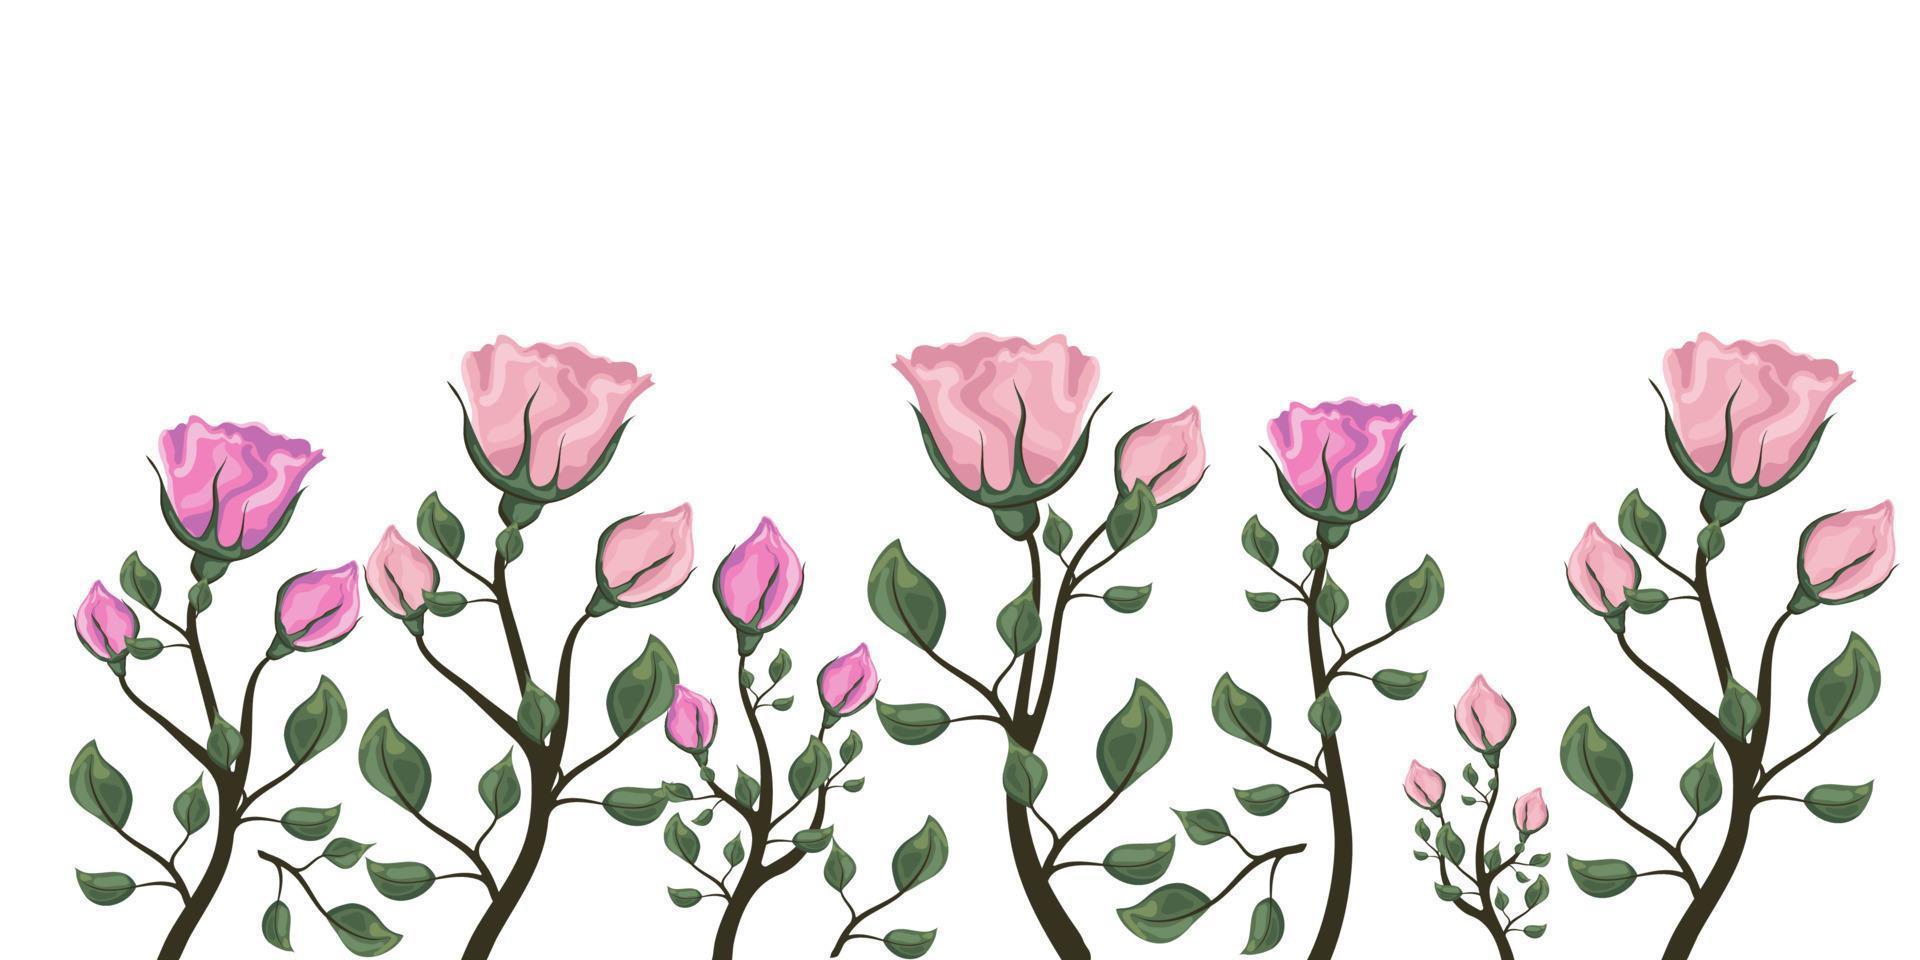 realista vector elementos conjunto de rosado rosas. rosado Rosa flor brote y abierto flor aislado en transparente fondo.vector ilustración.